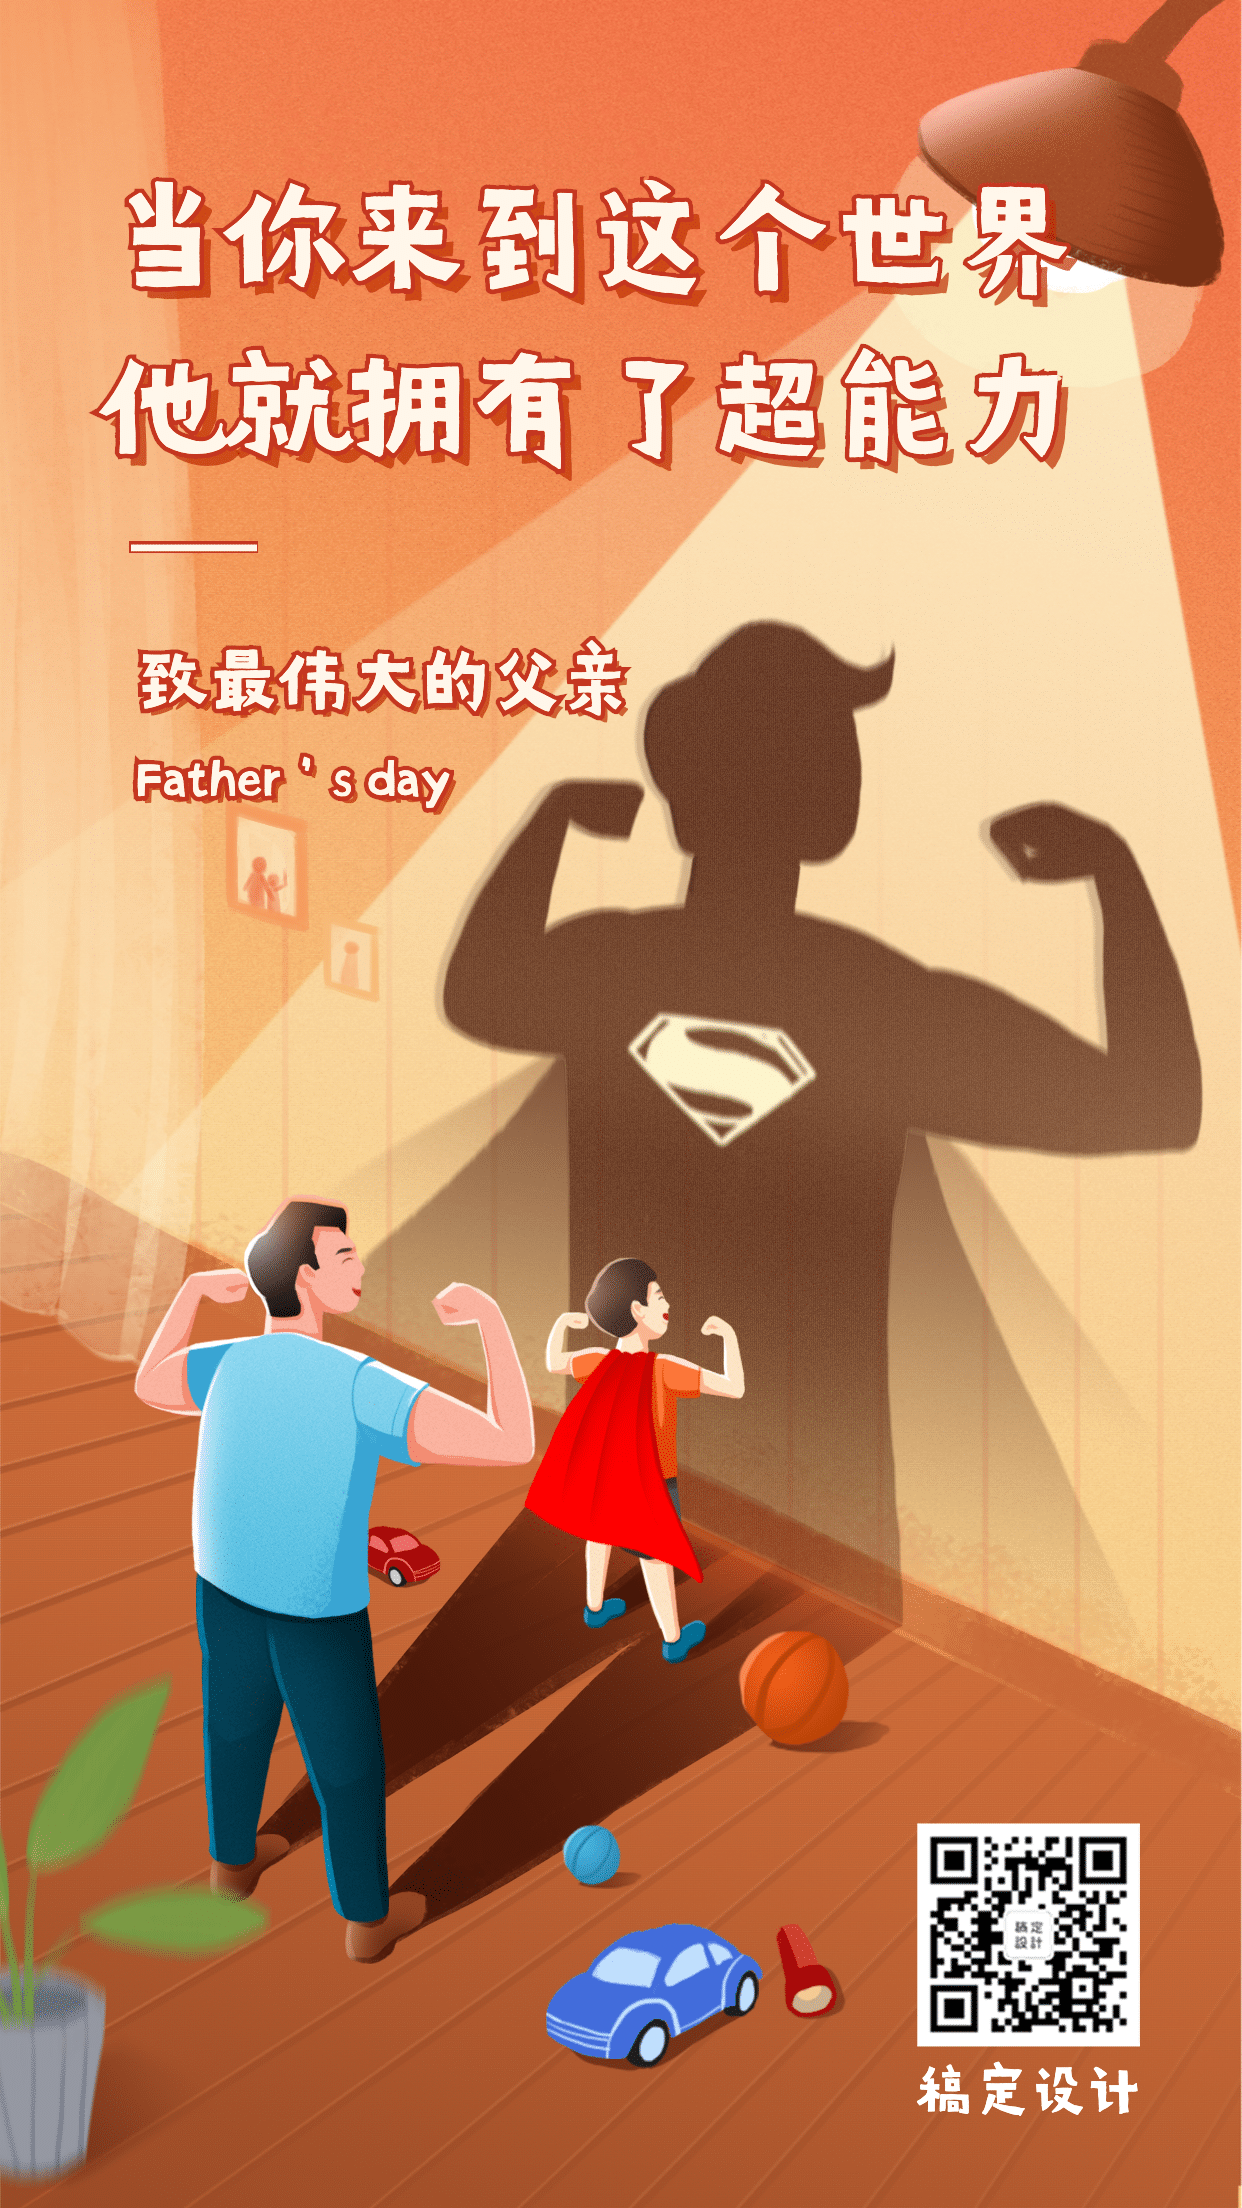 父亲节祝福超人插画手机海报预览效果